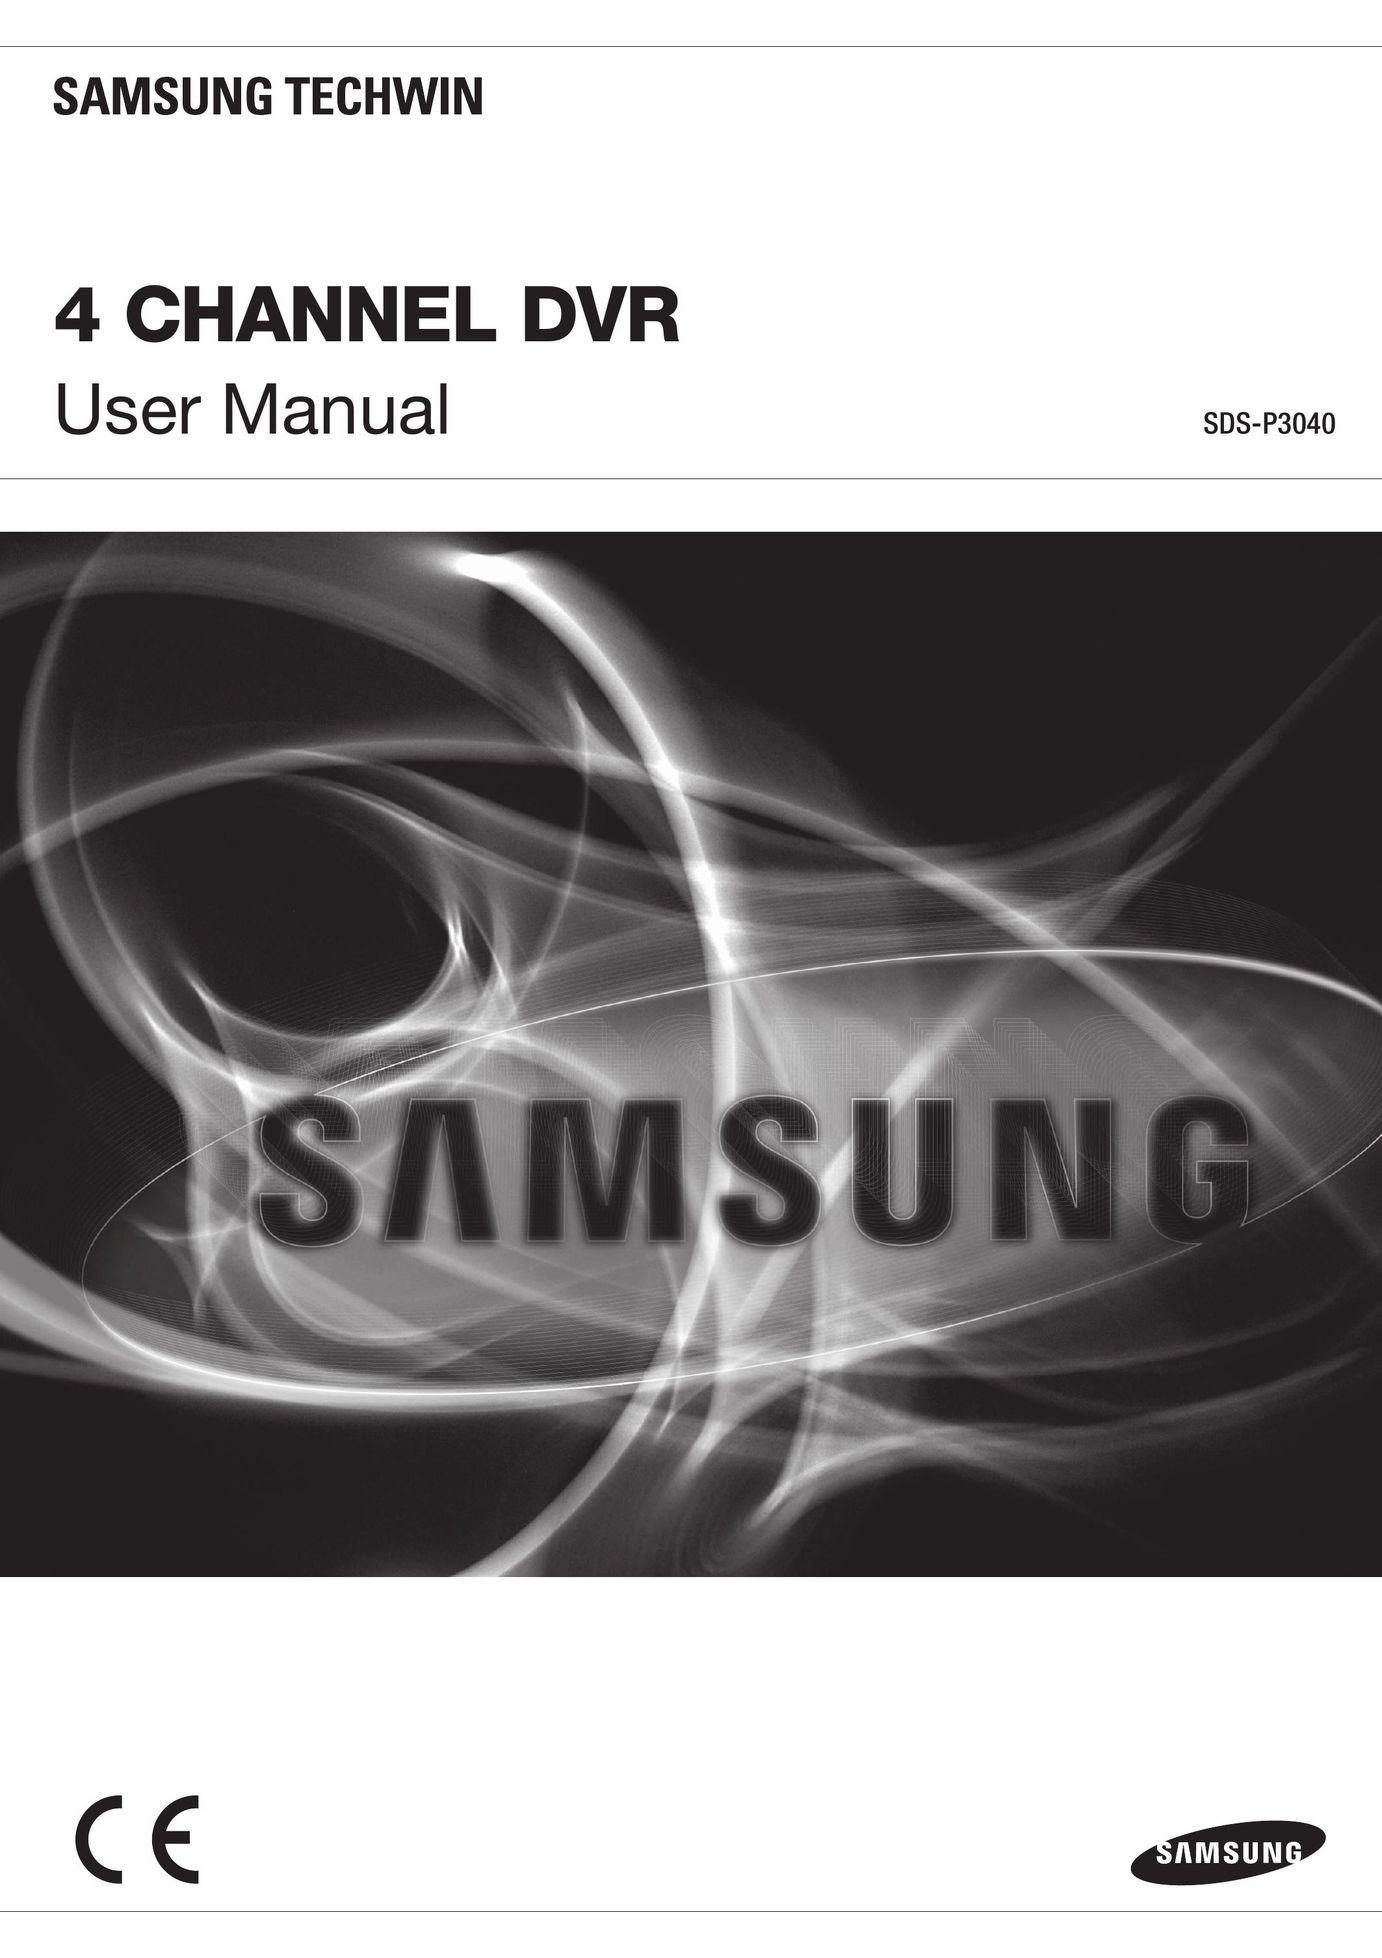 Samsung SDR3100 DVR User Manual